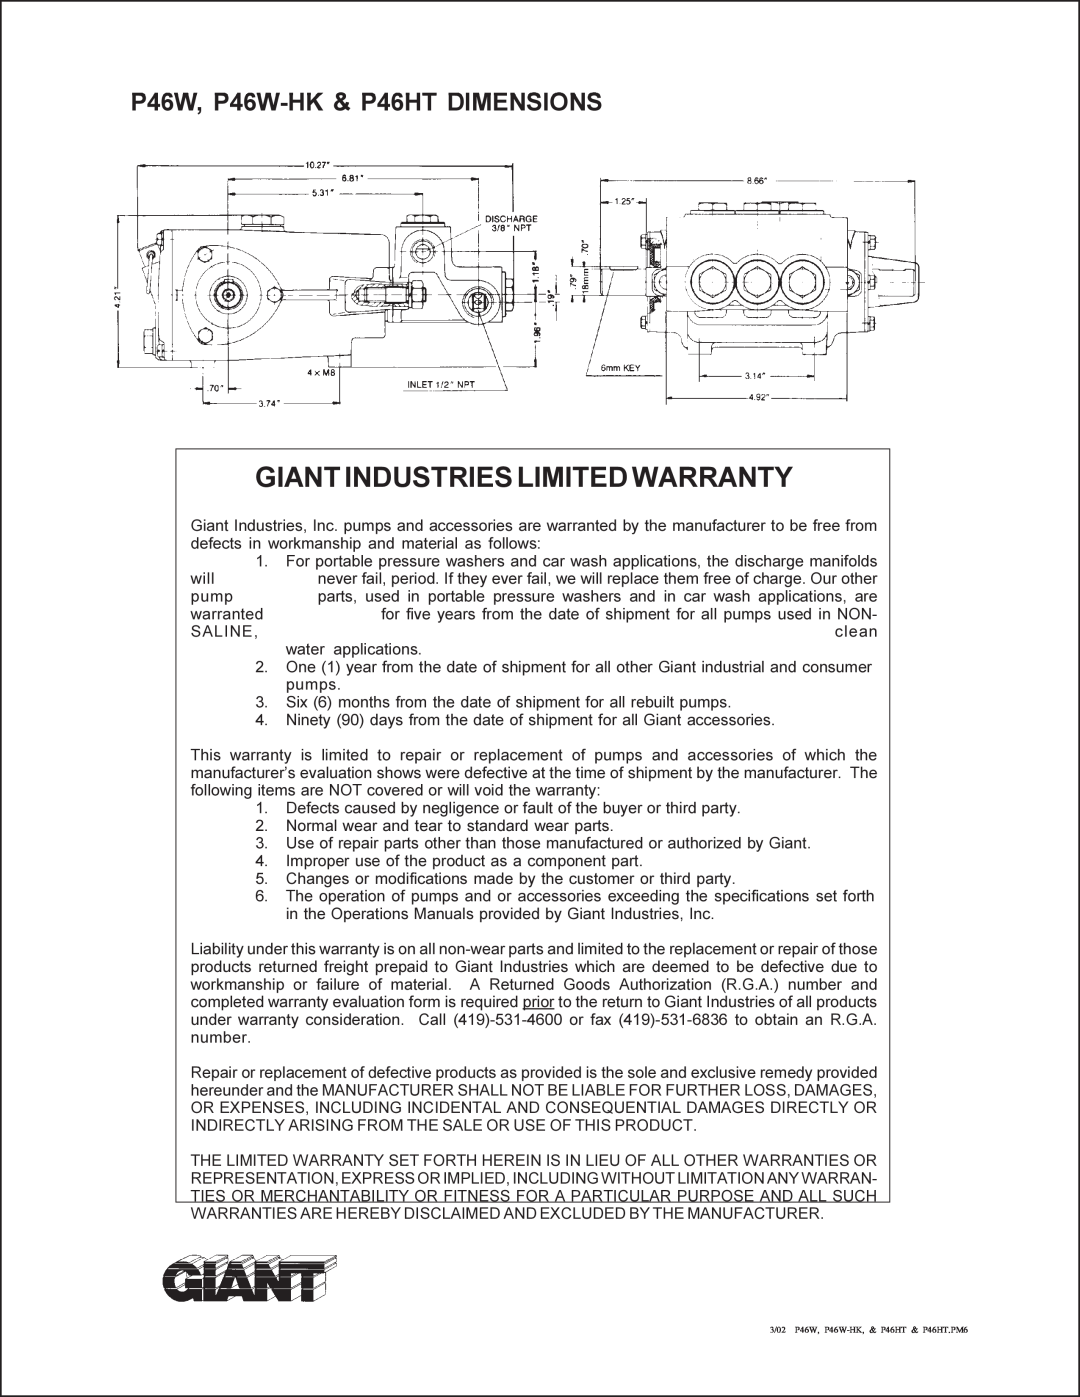 Giant p46w service manual Giantindustrieslimitedwarranty, P46W, P46W-HK & P46HT DIMENSIONS 